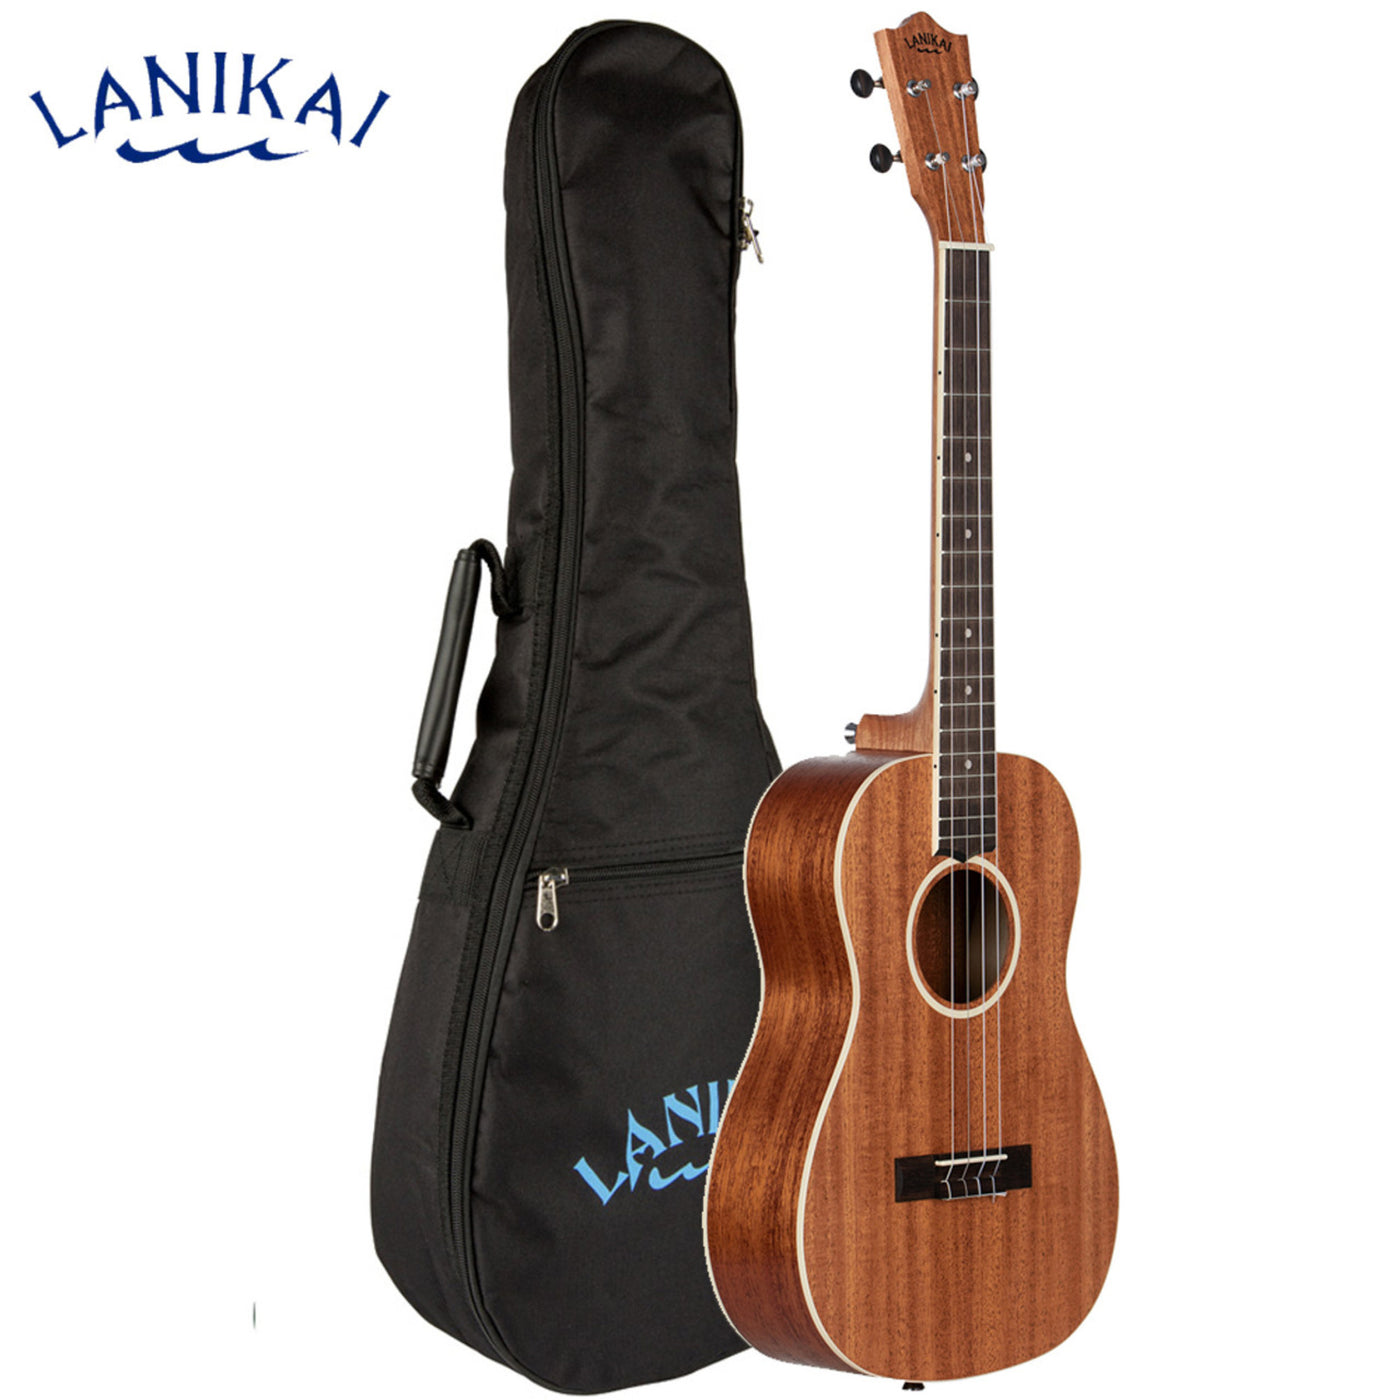 Lanikai LU21-B 4 String Ukulele, Baritone Ukulele, with Techwood Fingerboard and Gig Bag